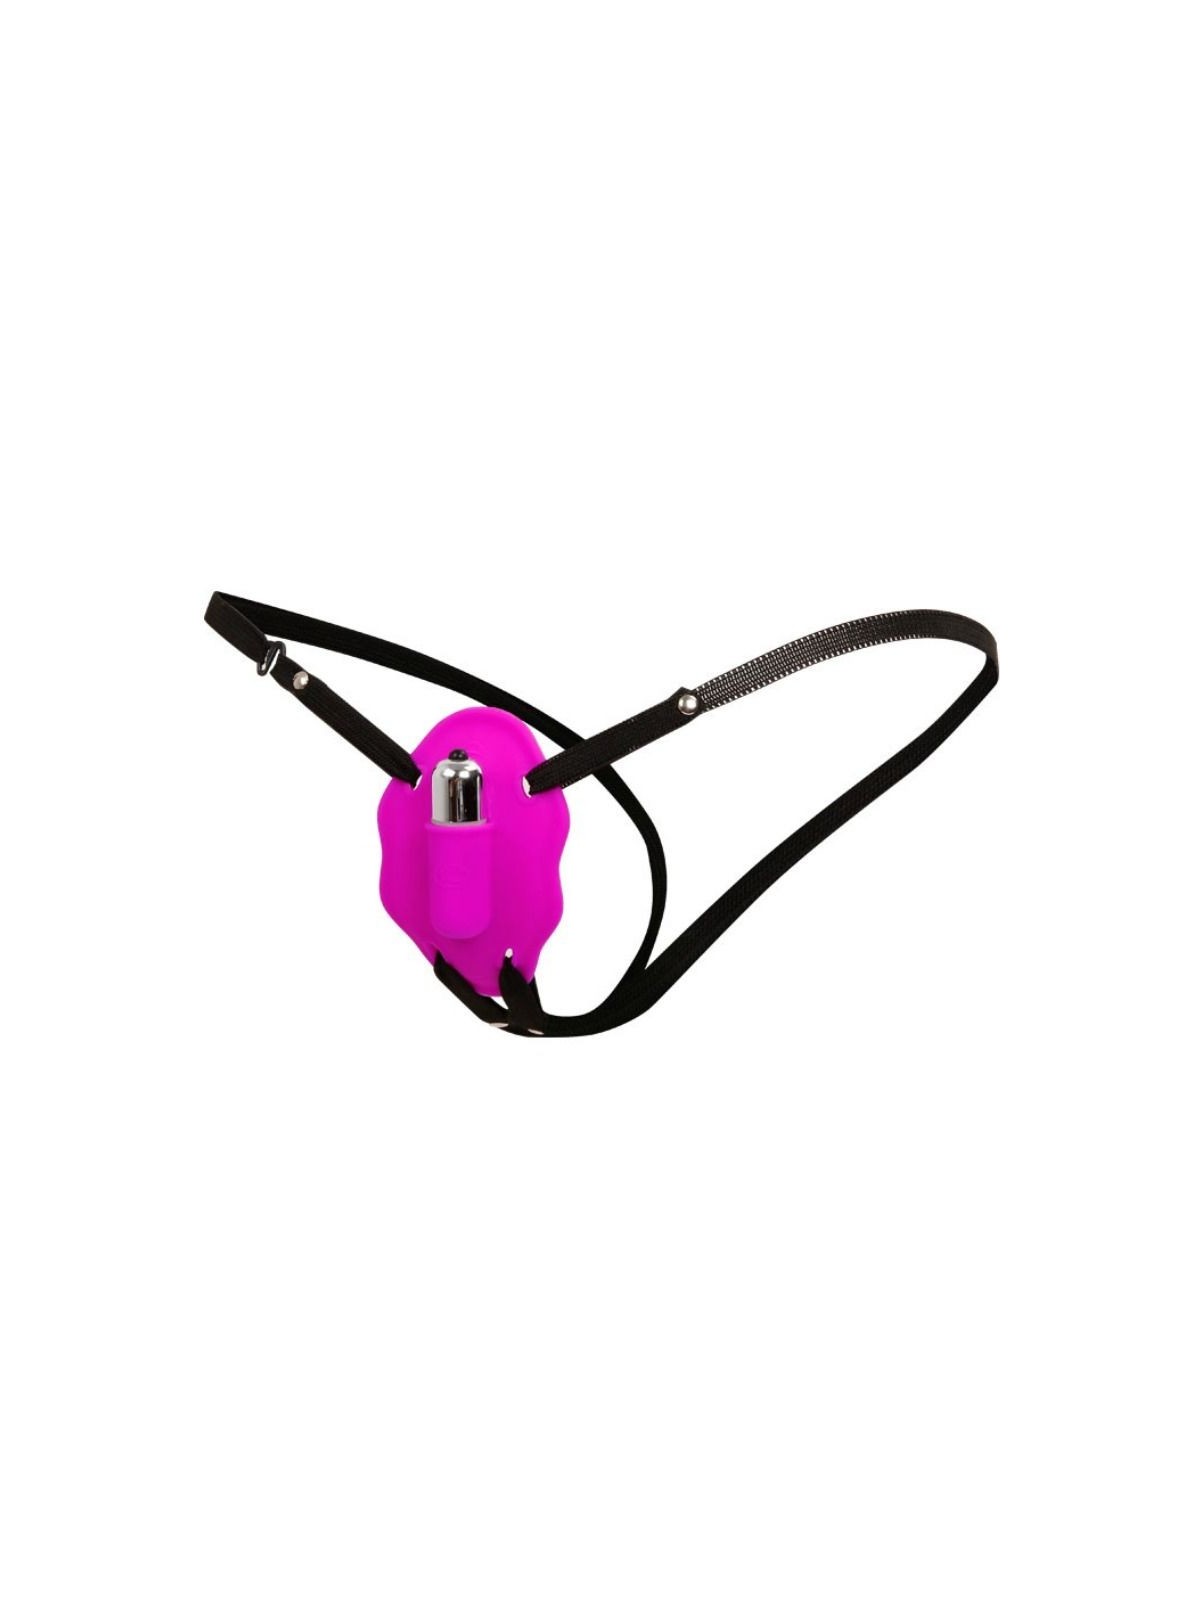 Arnes Love Rider Con Vibración - Comprar Mariposa vibradora Baile - Mariposas vibradoras (1)